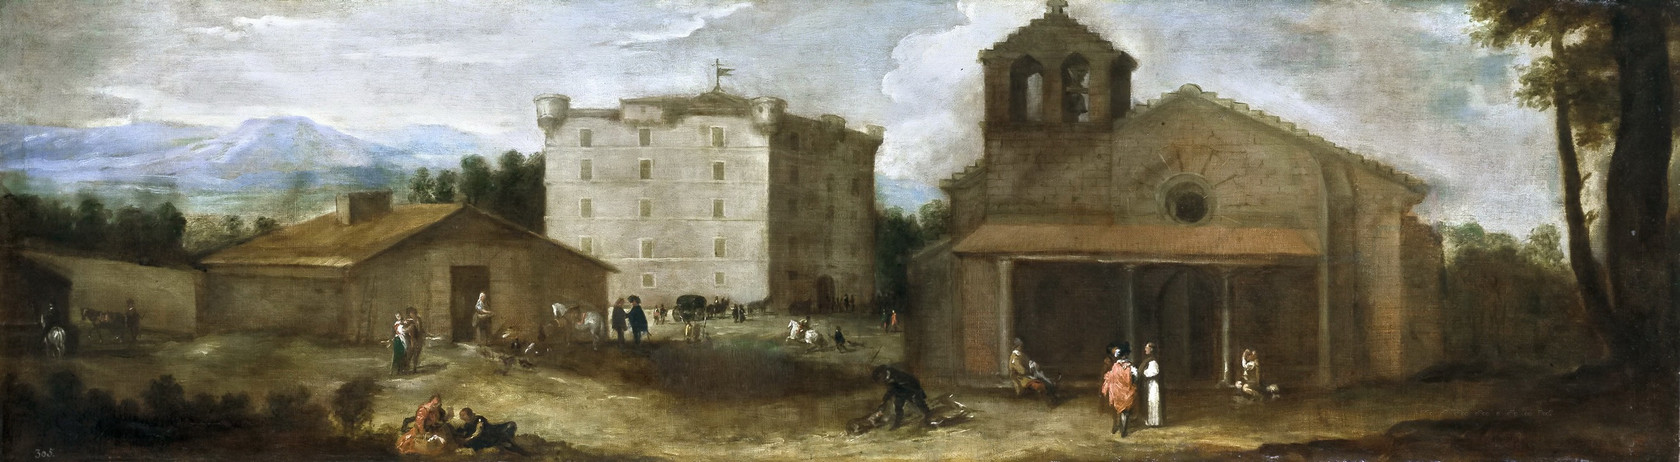 Картина Вид на Эль-Кампильо, загородный дом для монахов - Музей Прадо